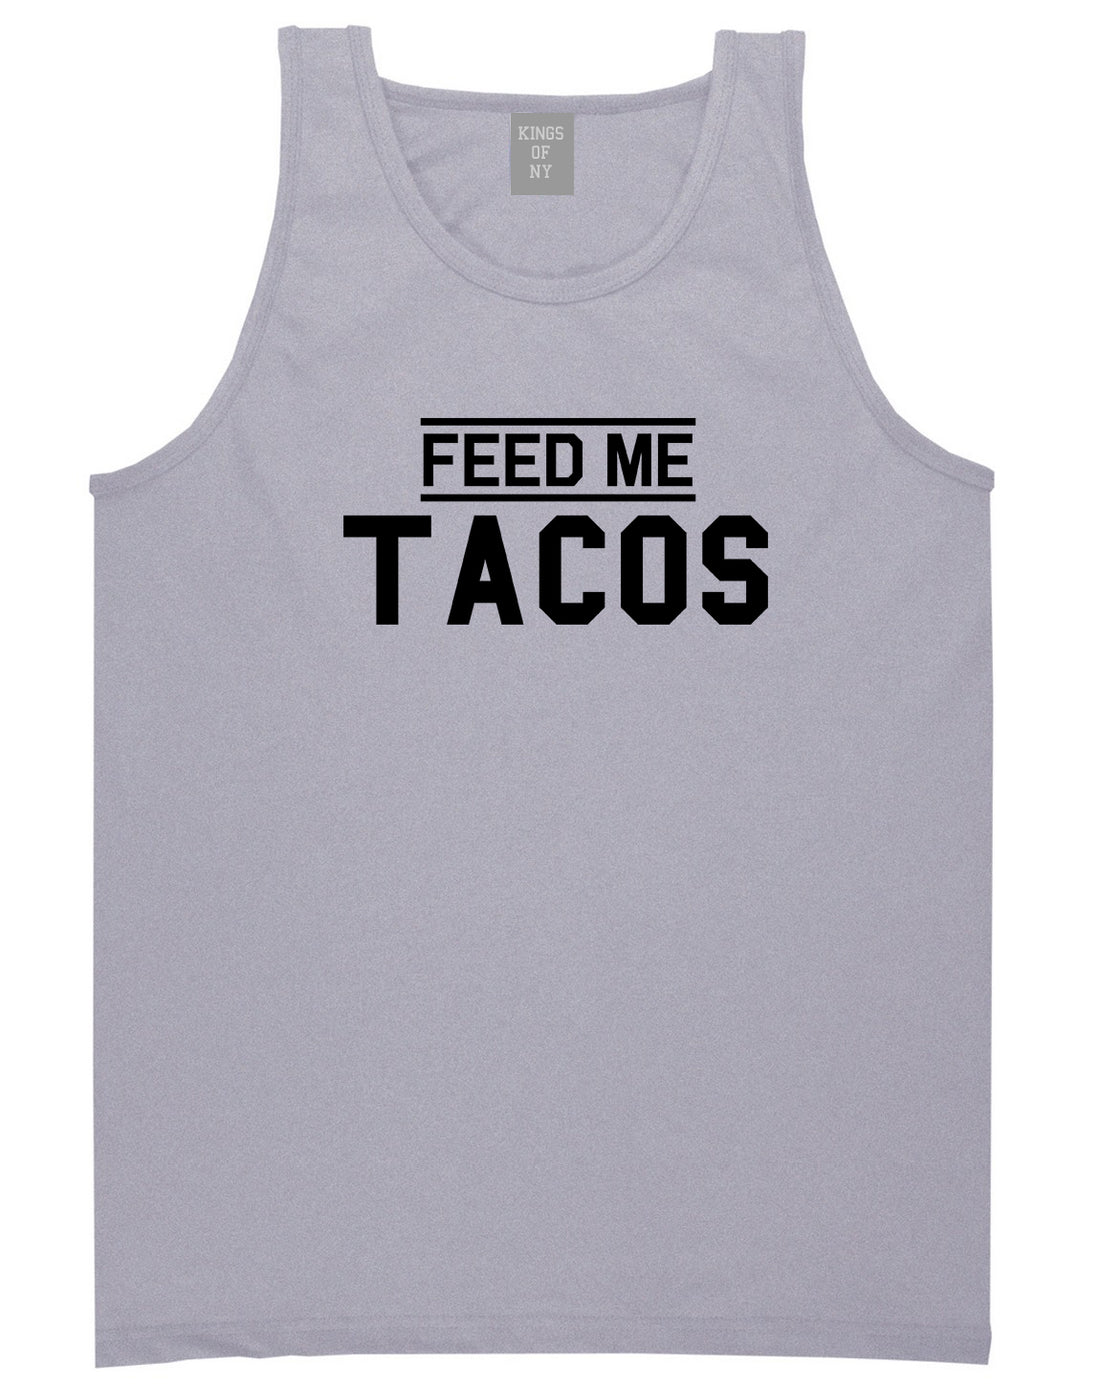 Feed Me Tacos Mens Grey Tank Top Shirt by KINGS OF NY